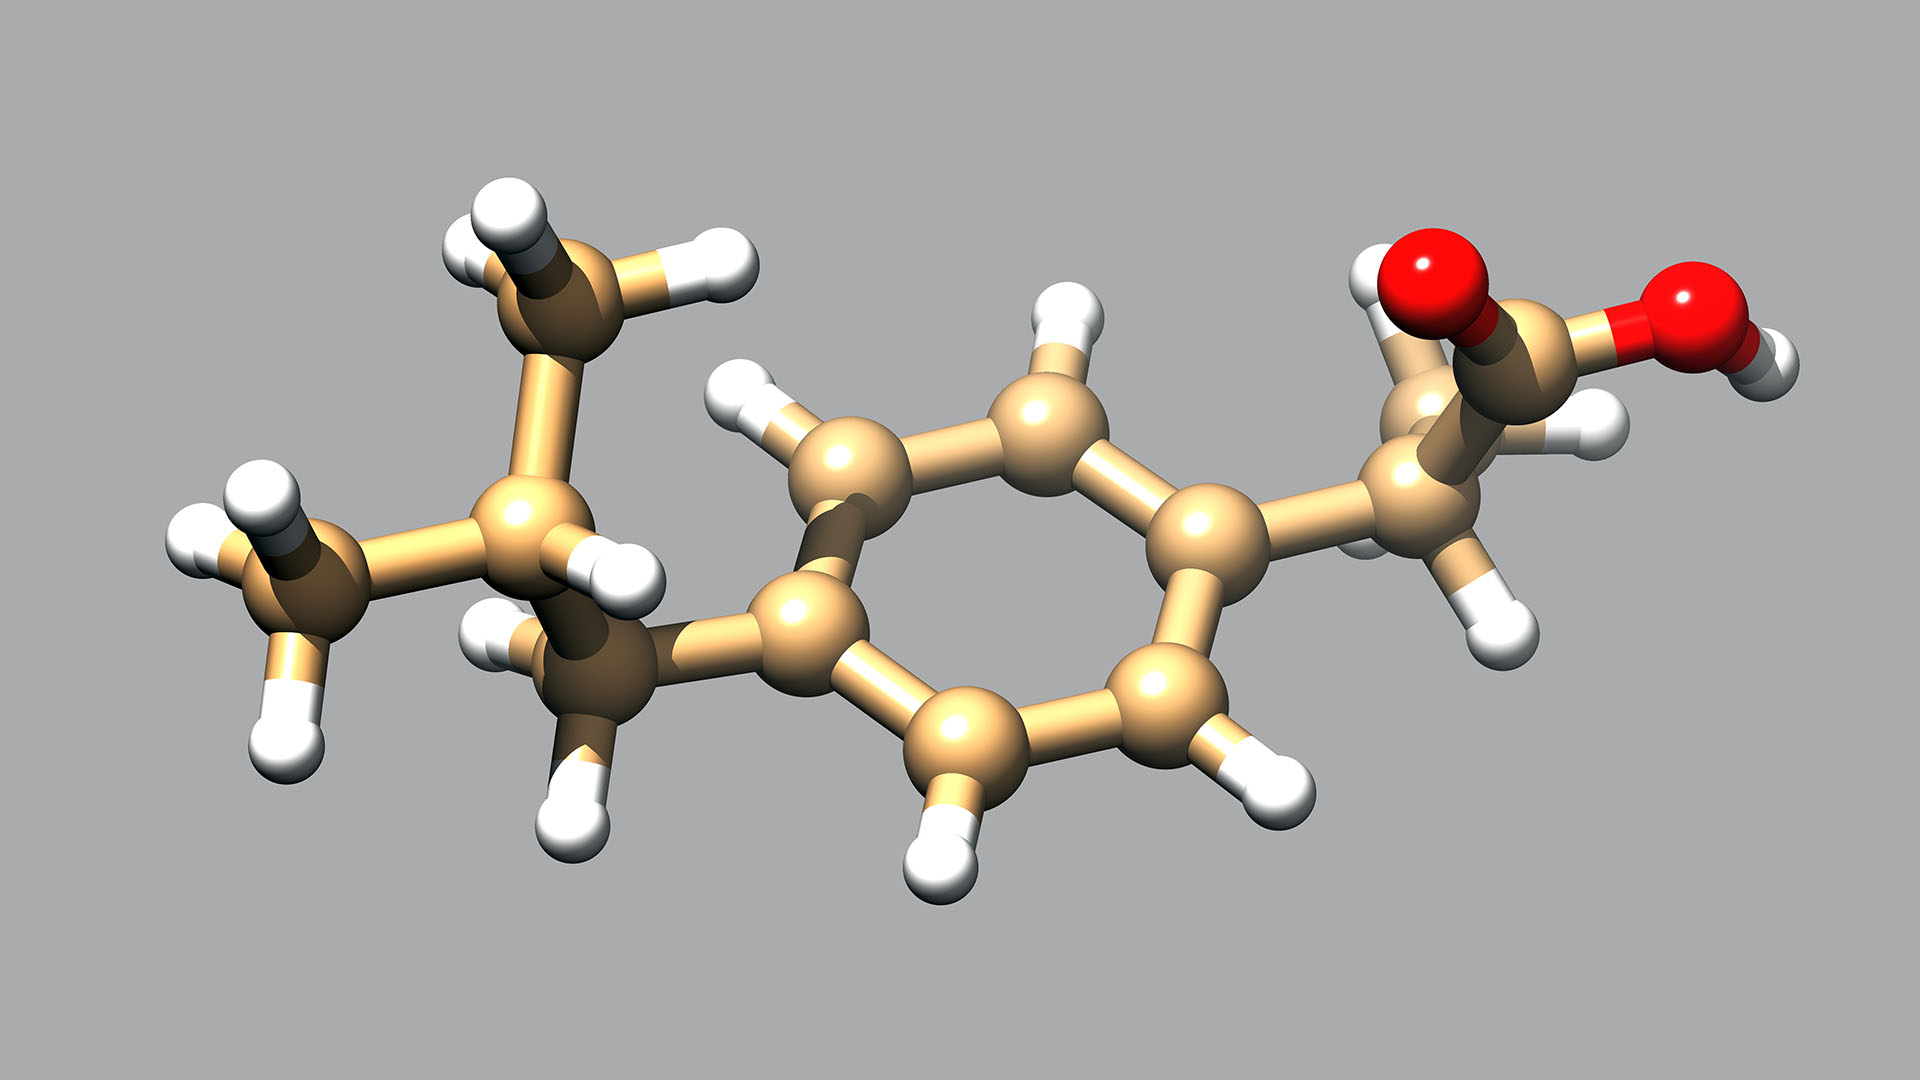 El investigador del Conicet y del Ceprocor Dante Beltramo modificó la molécula del ibuprofeno haciéndola 100% soluble en agua para administrarlo en nebulizaciones (Shutterstock)